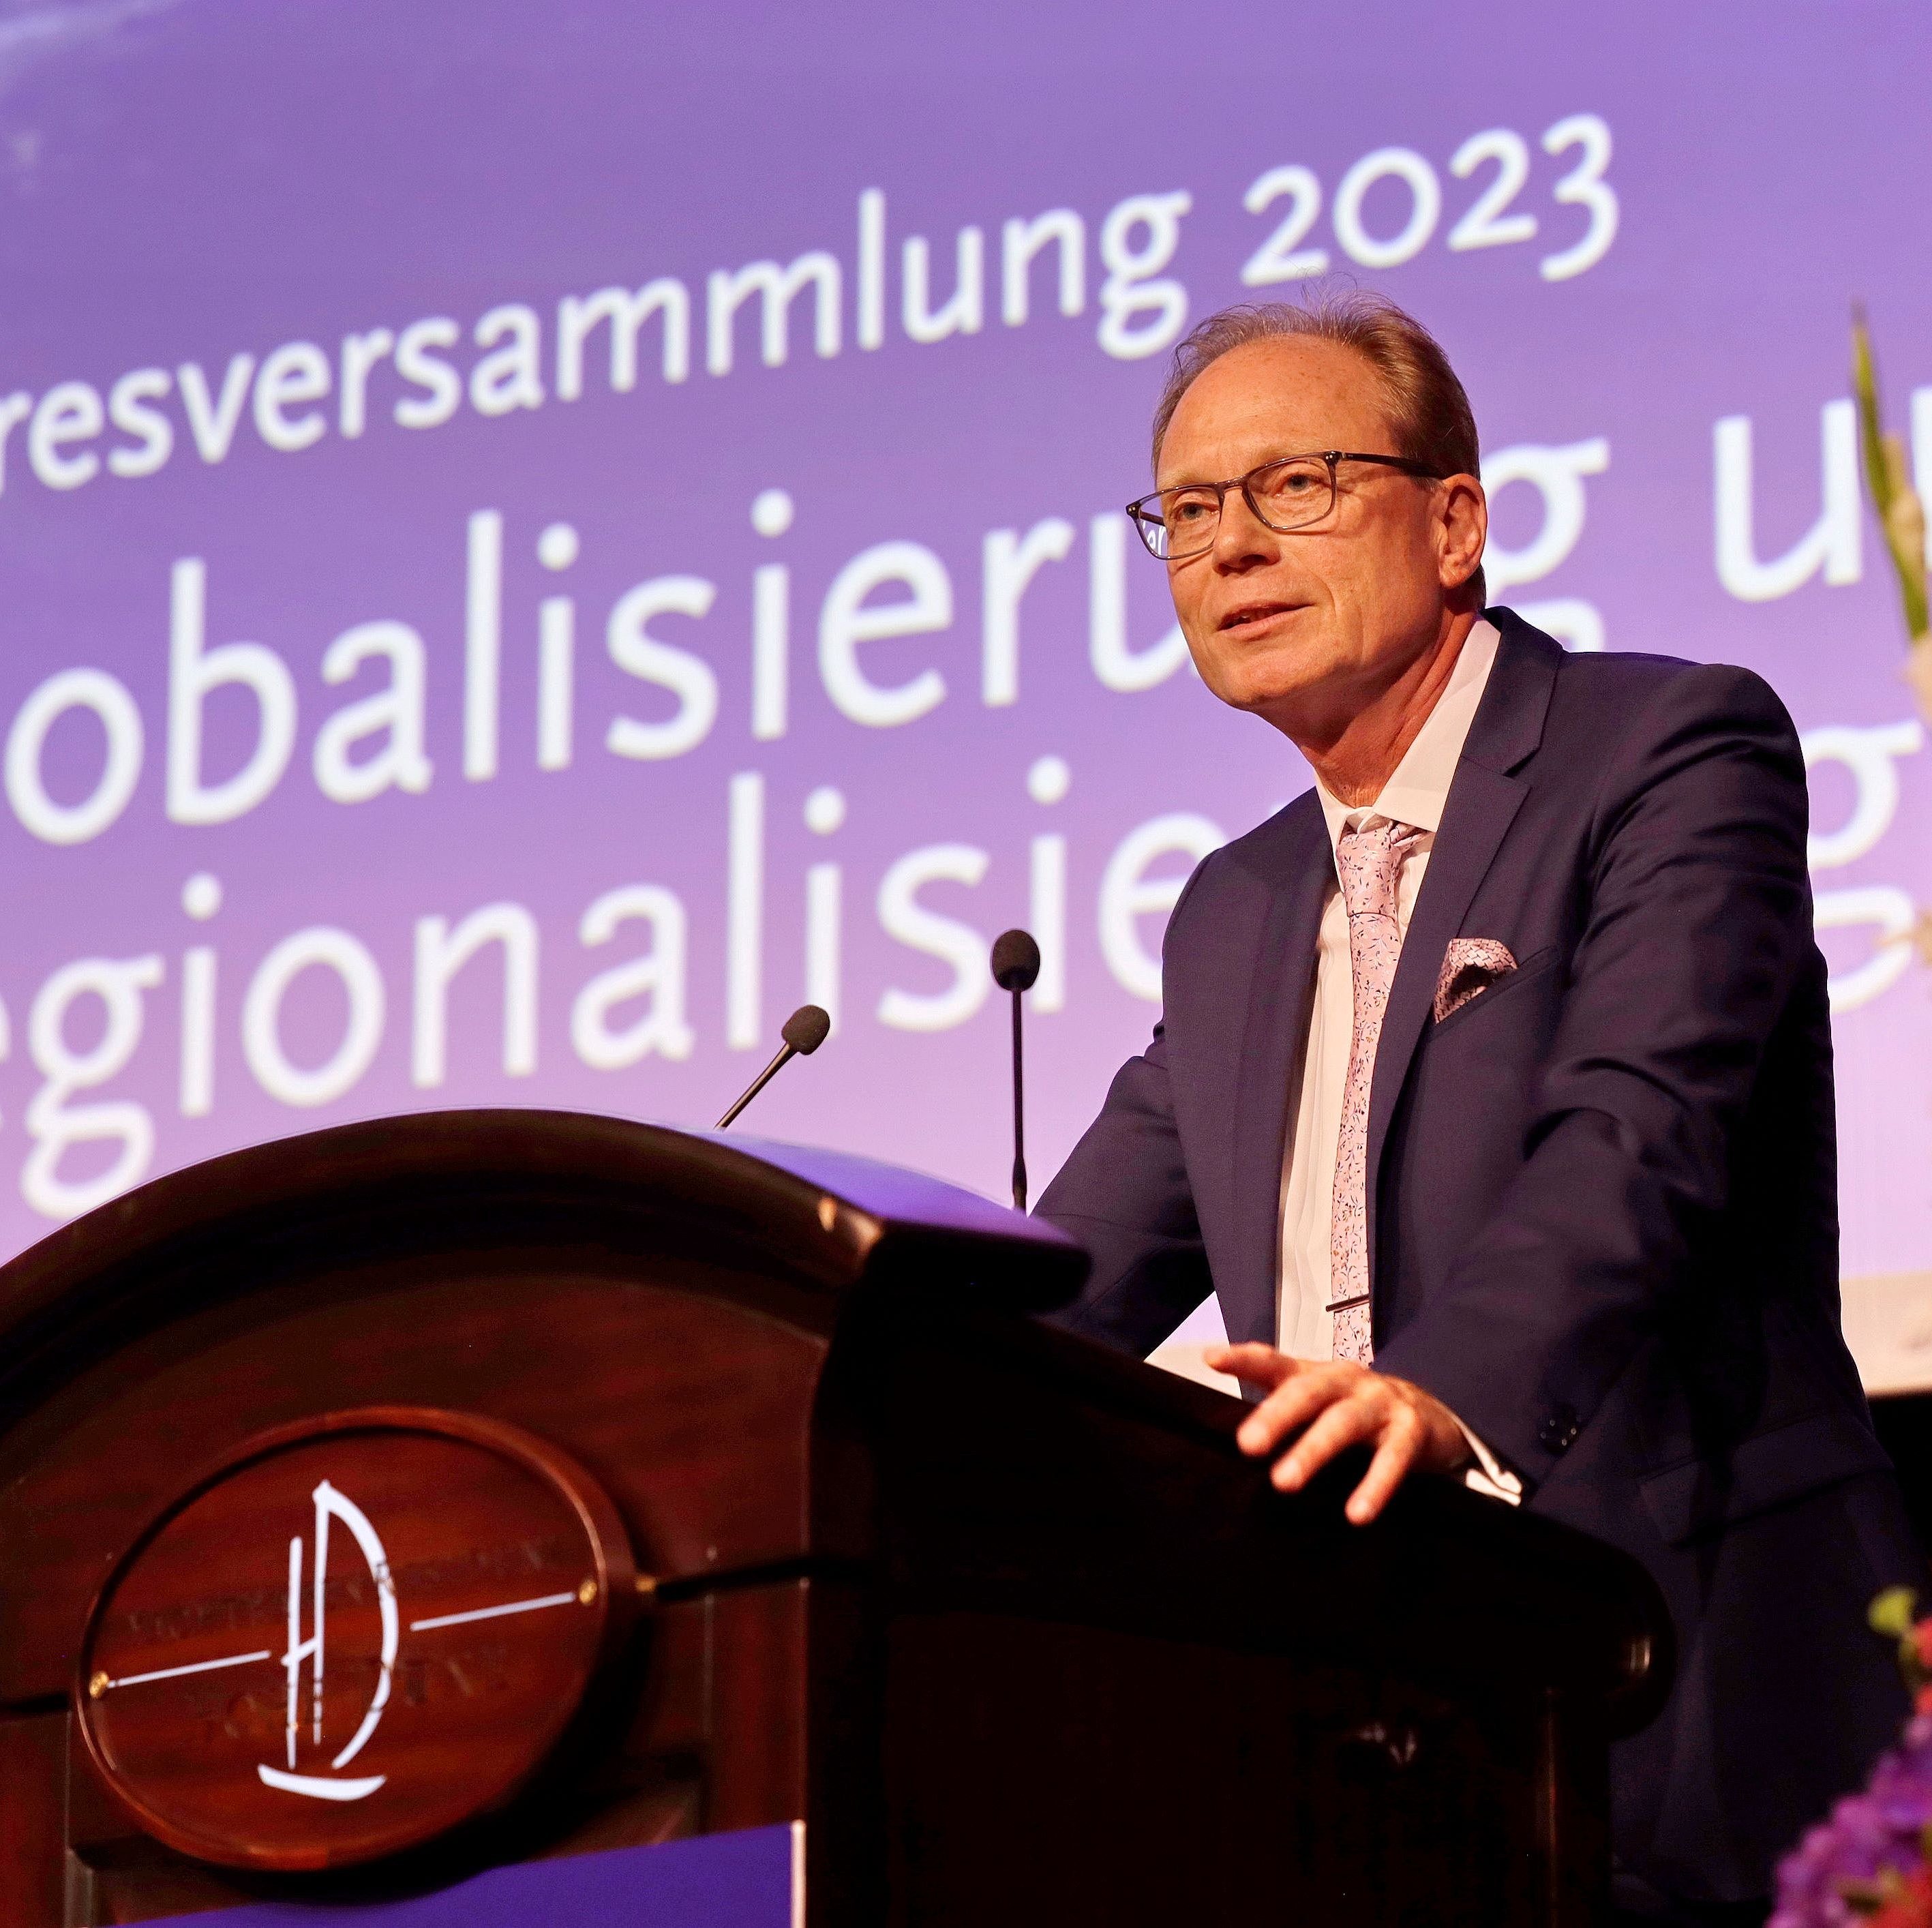 Jochen Schulte, Staatssekretär für Wirtschaft, Infrastruktur, Tourismus und Arbeit, betonte in seiner Rede das dynamische Wachstum des Wirtschaftsstandorts Mecklenburg-Vorpommern